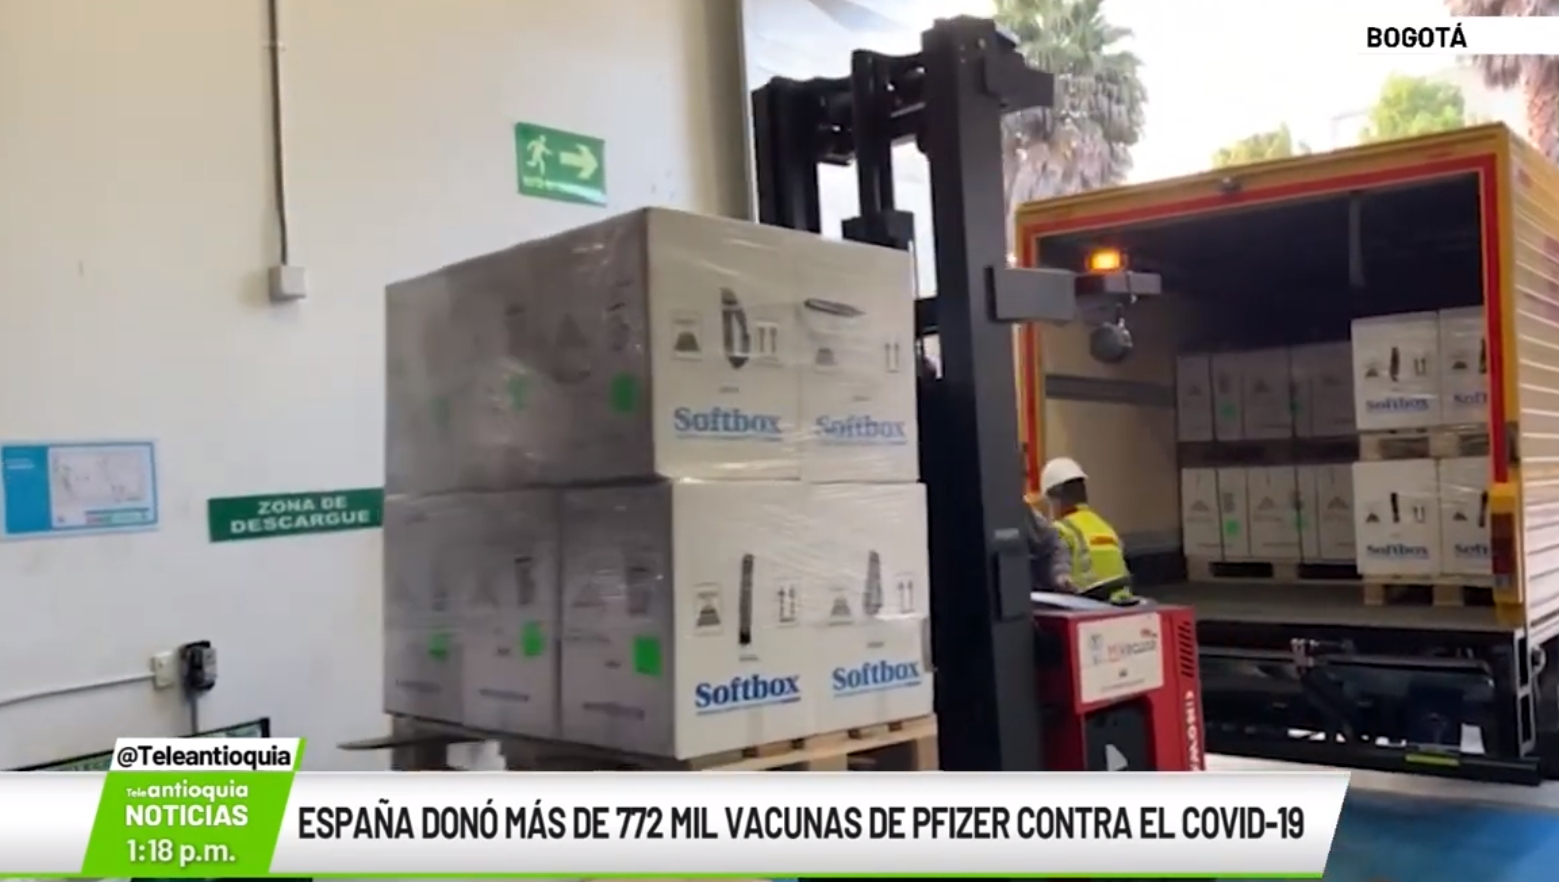 España donó más de 772 mil vacunas de pfizer contra covid -19